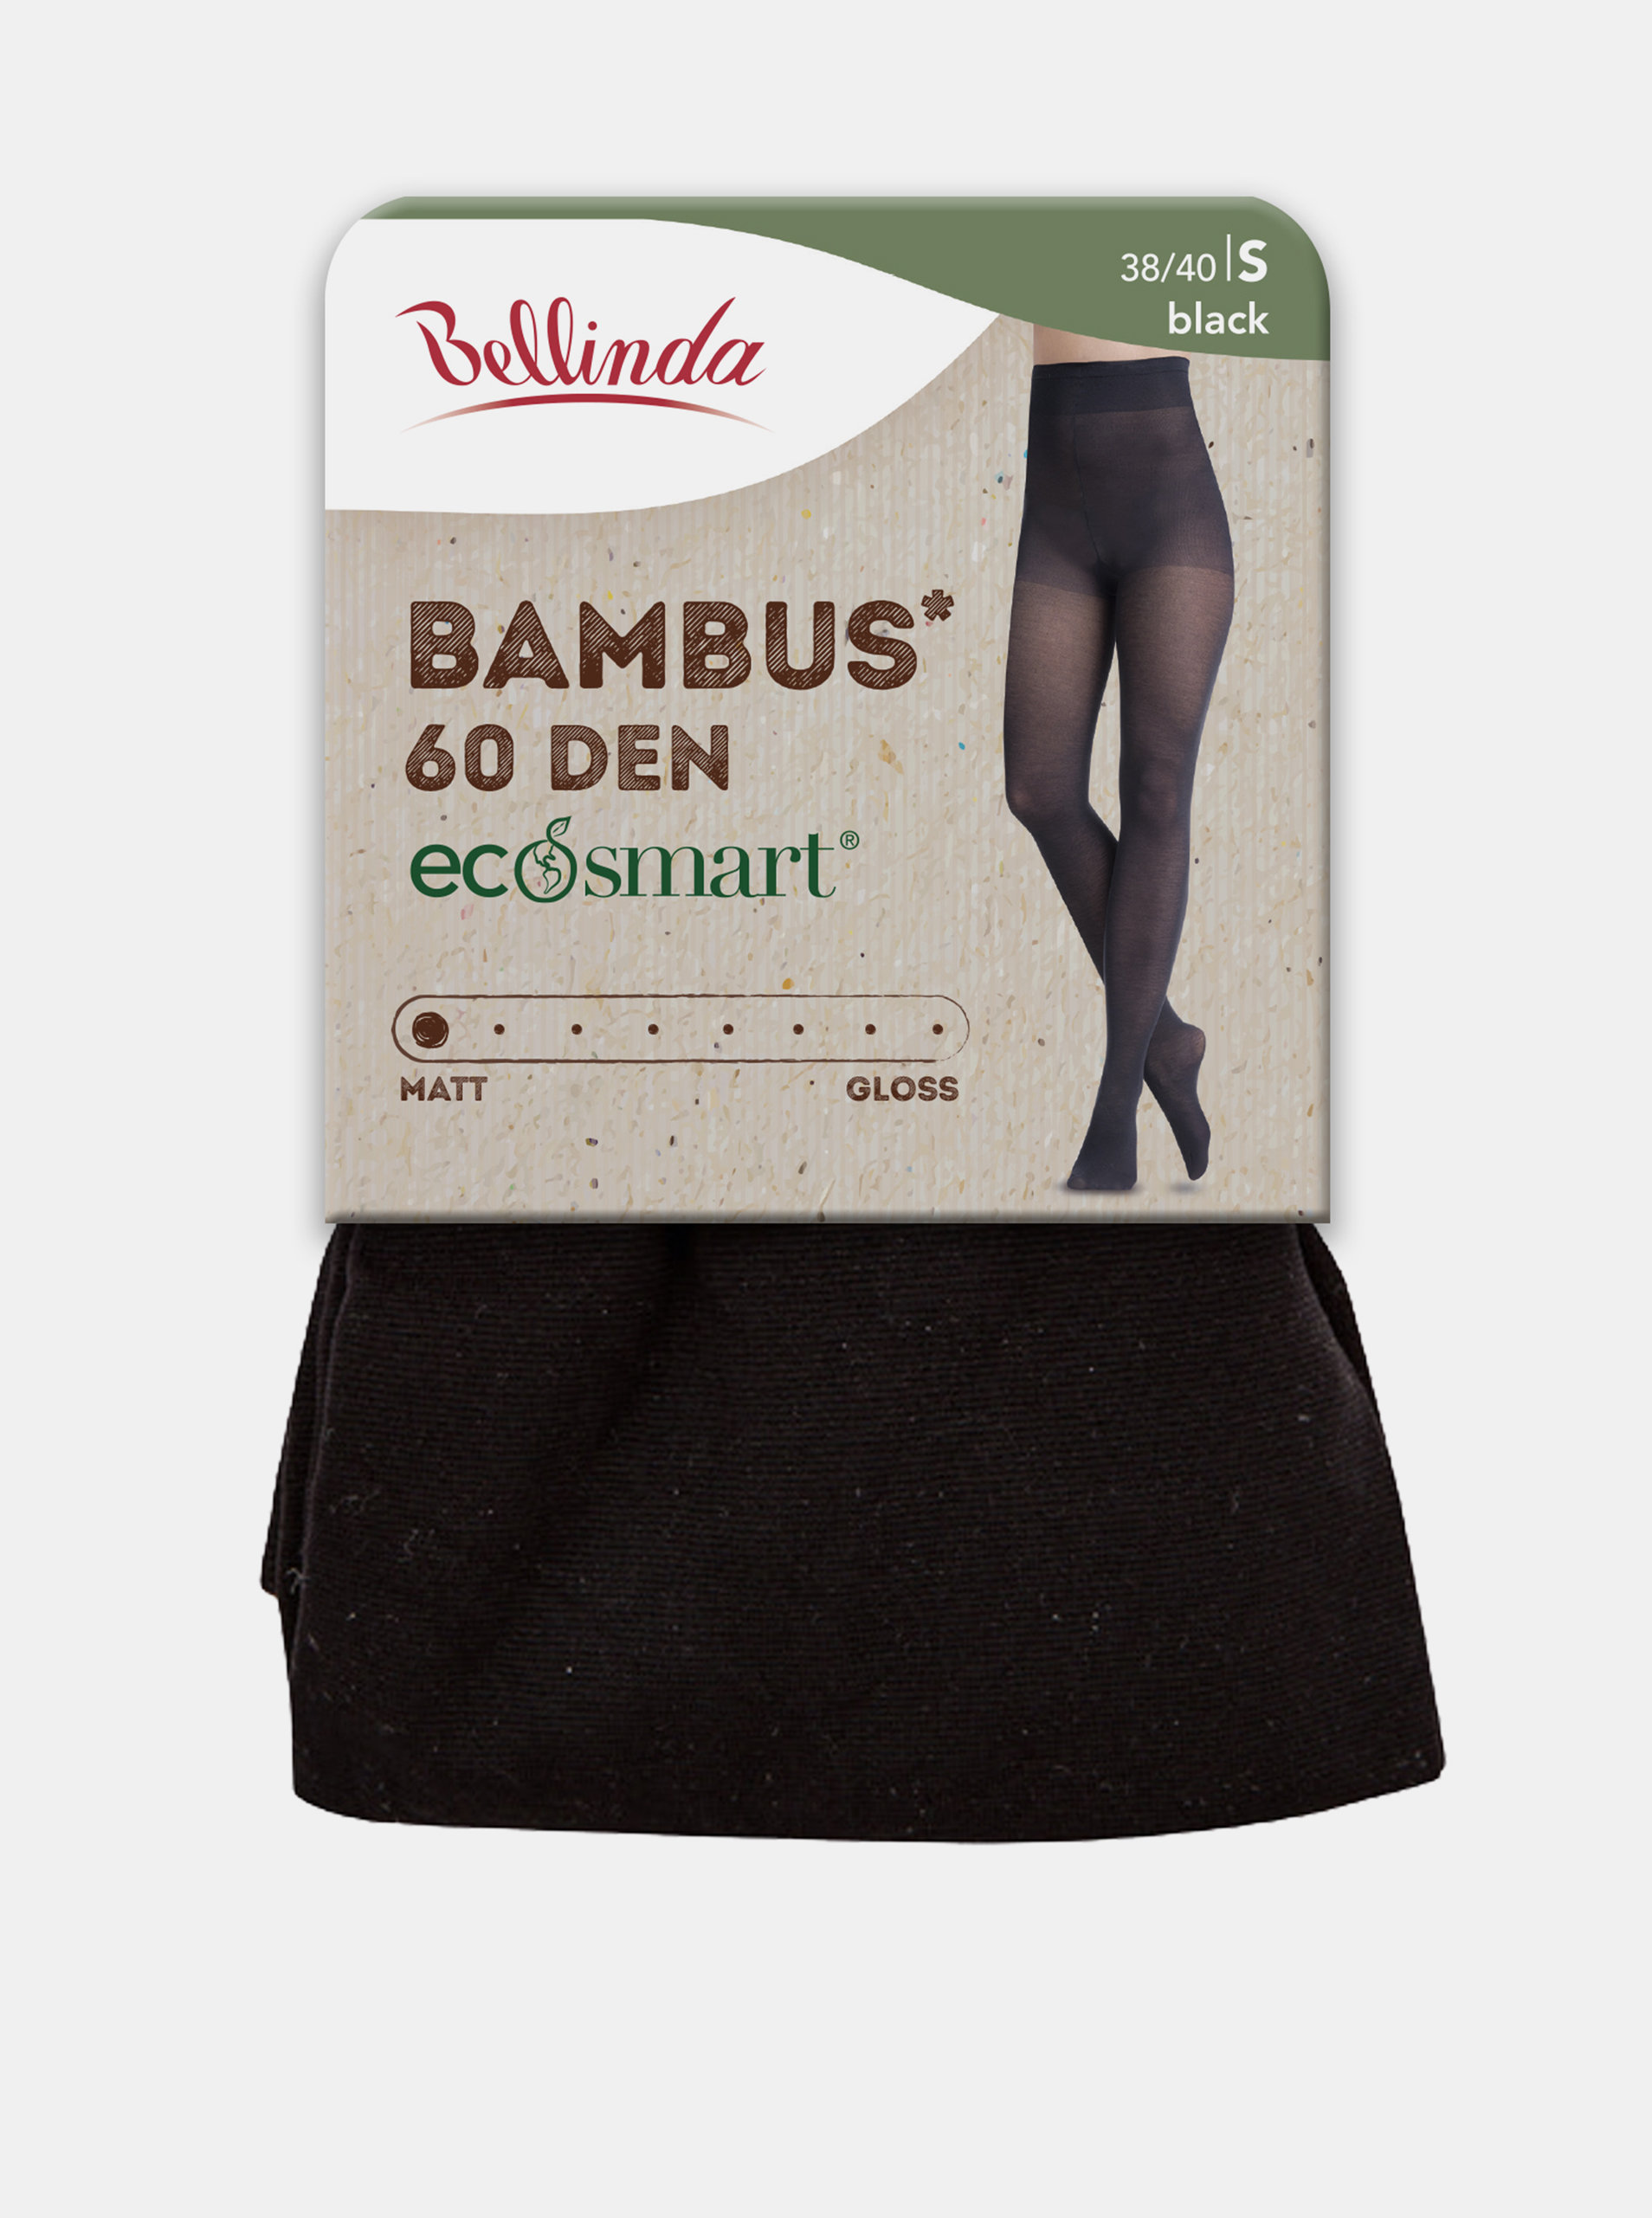 Ekologické bambusové punčochové kalhoty ECOSMART BAMBUS 60 DEN - Dámské bambusové punčochy - černá